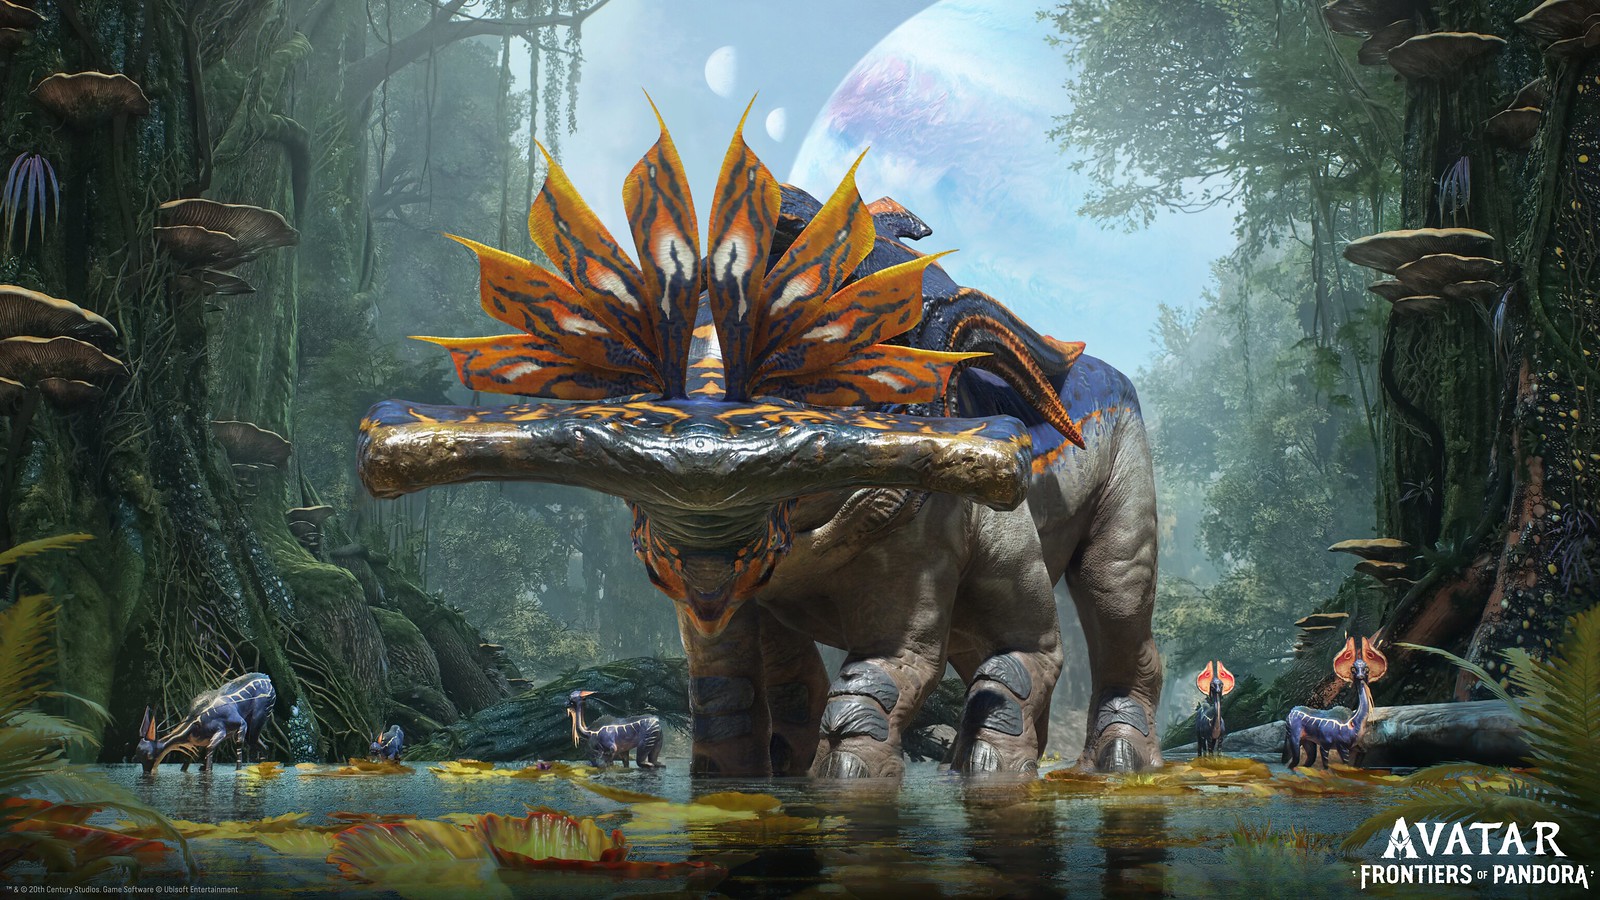 Avatar: Frontiers of Pandora revela sus características únicas en PS5 tras  finalizar su desarrollo